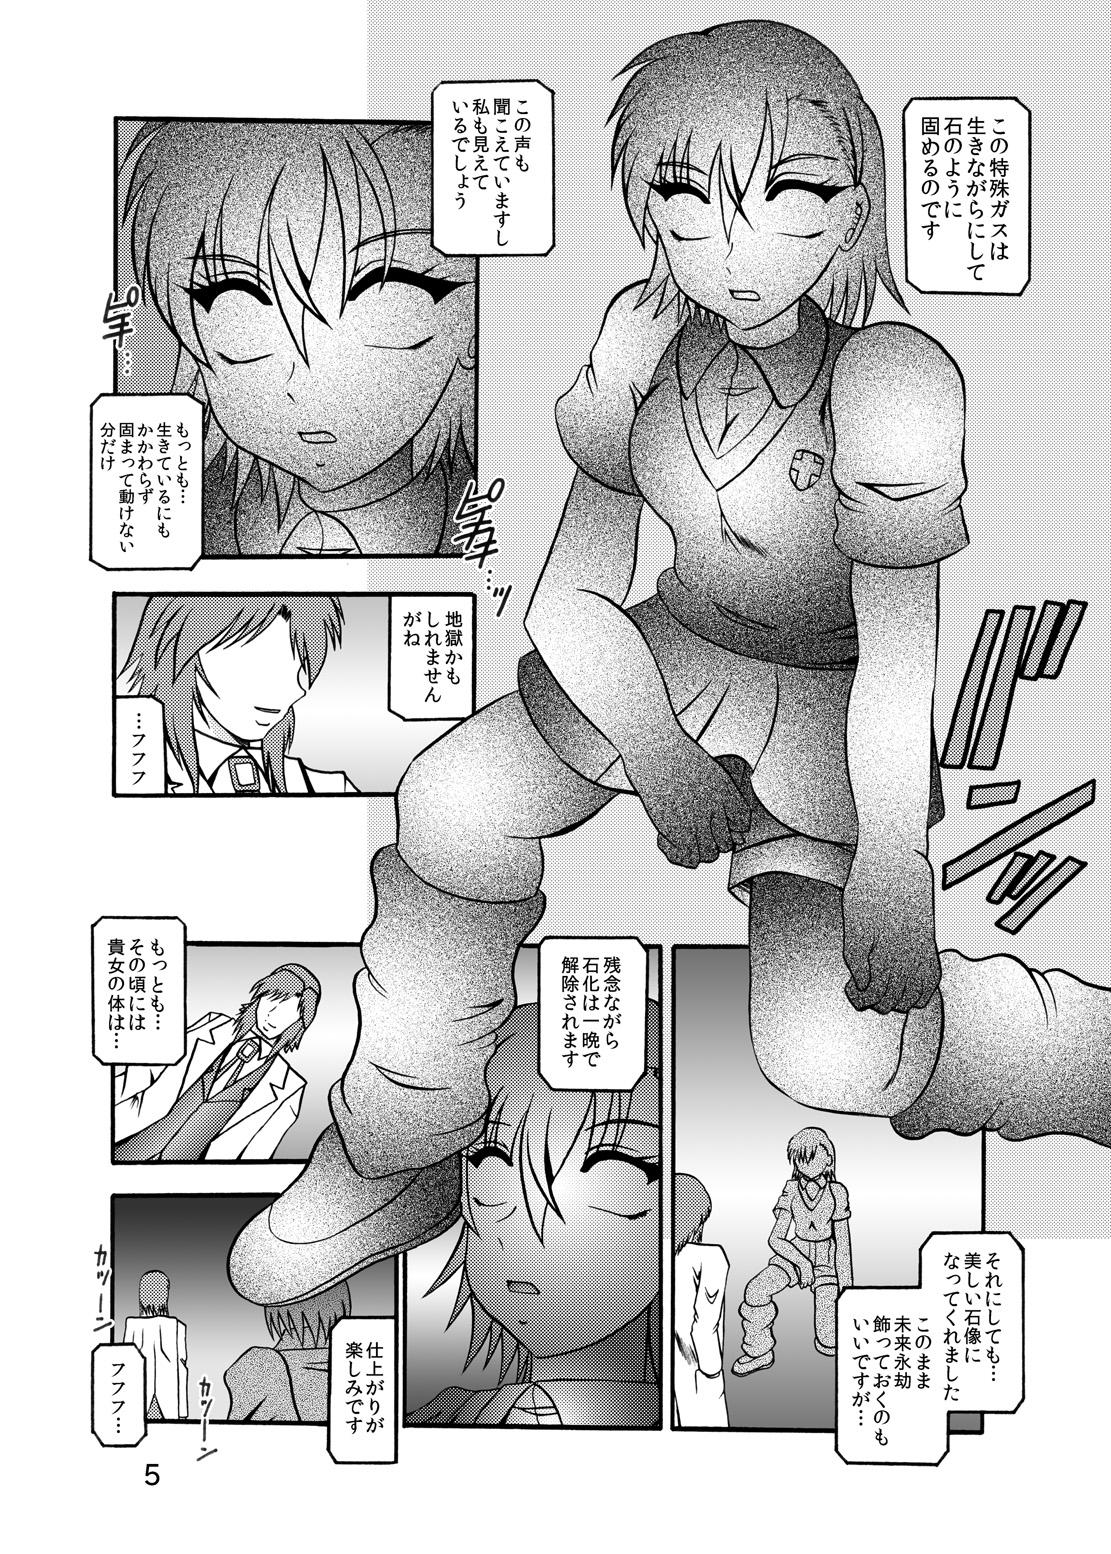 Yanks Featured Inyoku Kaizou: Misaka Mikoto - Toaru kagaku no railgun Work - Page 3